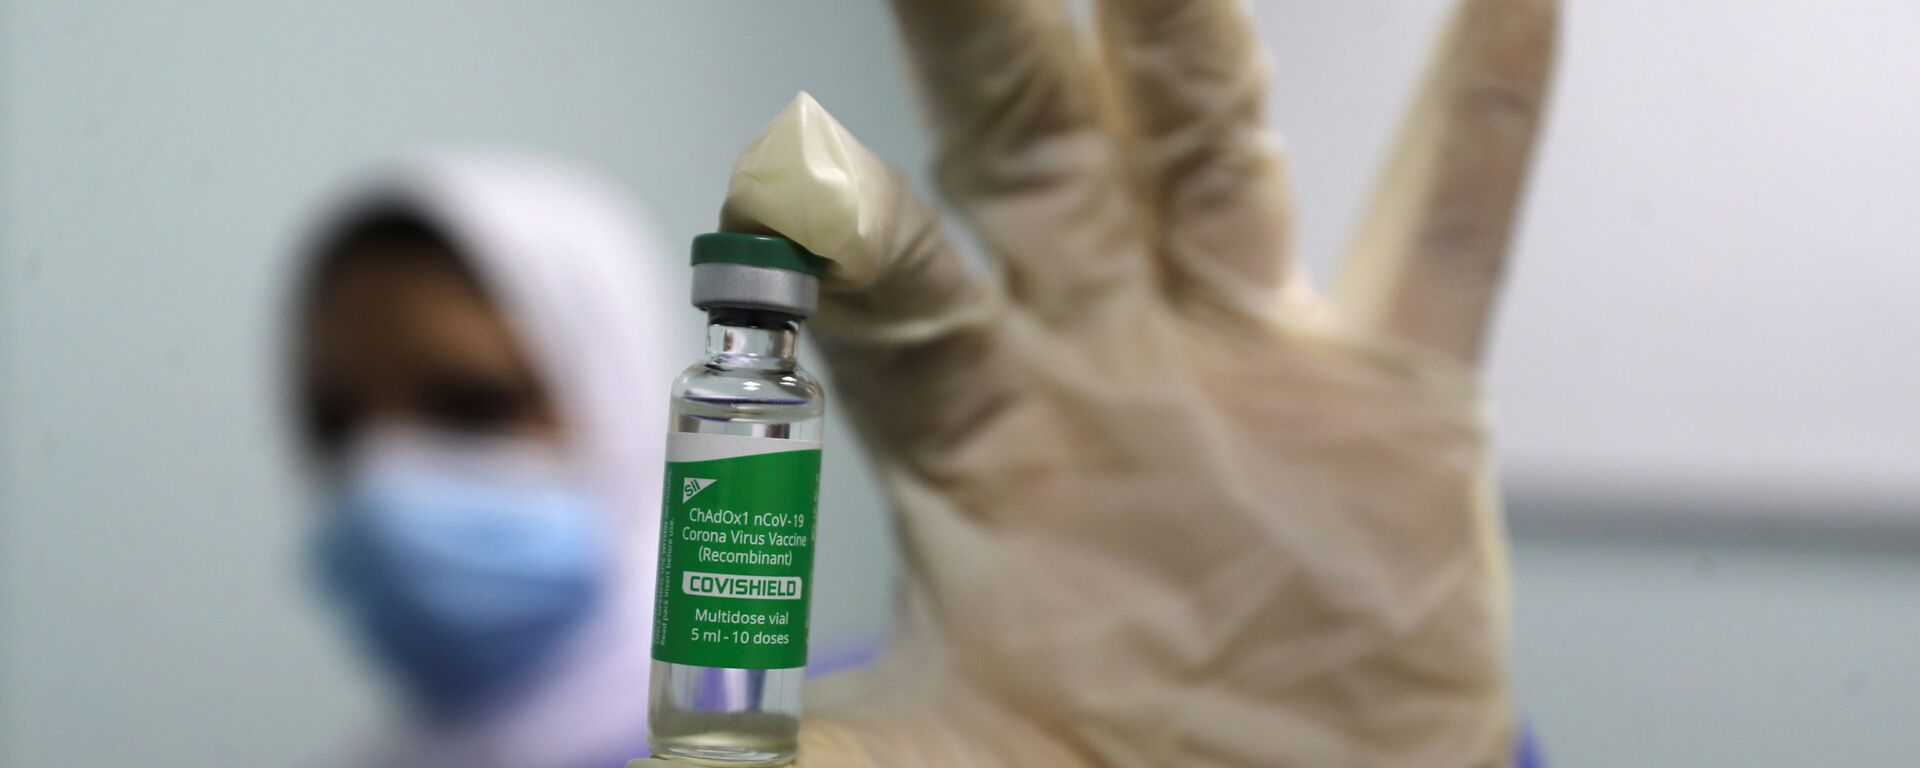 بدء تطعيم واسع النطاق في مصر ضد فيروس كورونا (كوفيد-19)، القاهرة، 4 مارس 2021 - سبوتنيك عربي, 1920, 21.05.2021